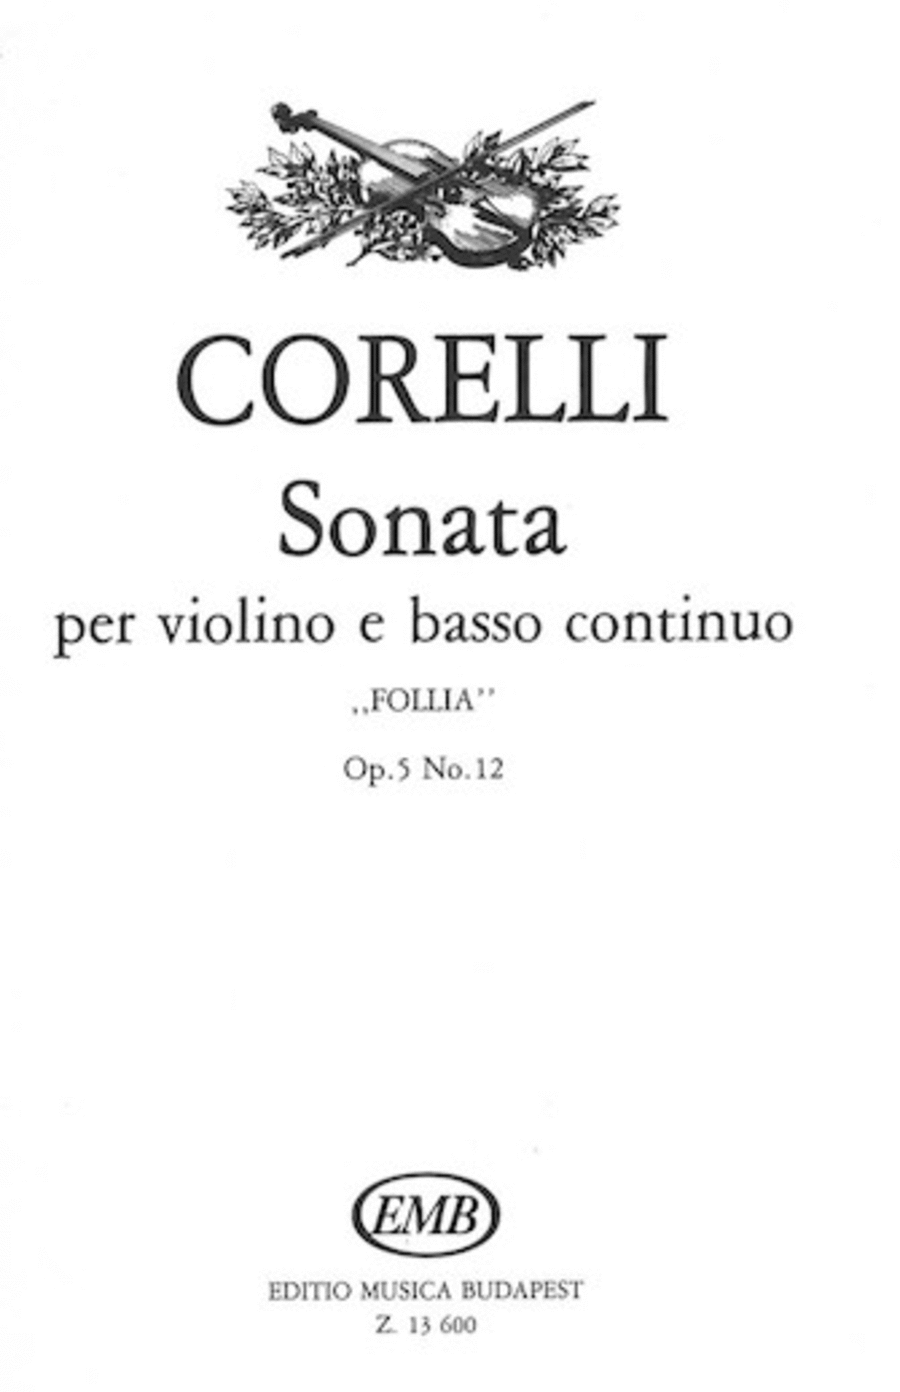 Sonata for violin and basso continuo Op.5, No. 12 "Follia"